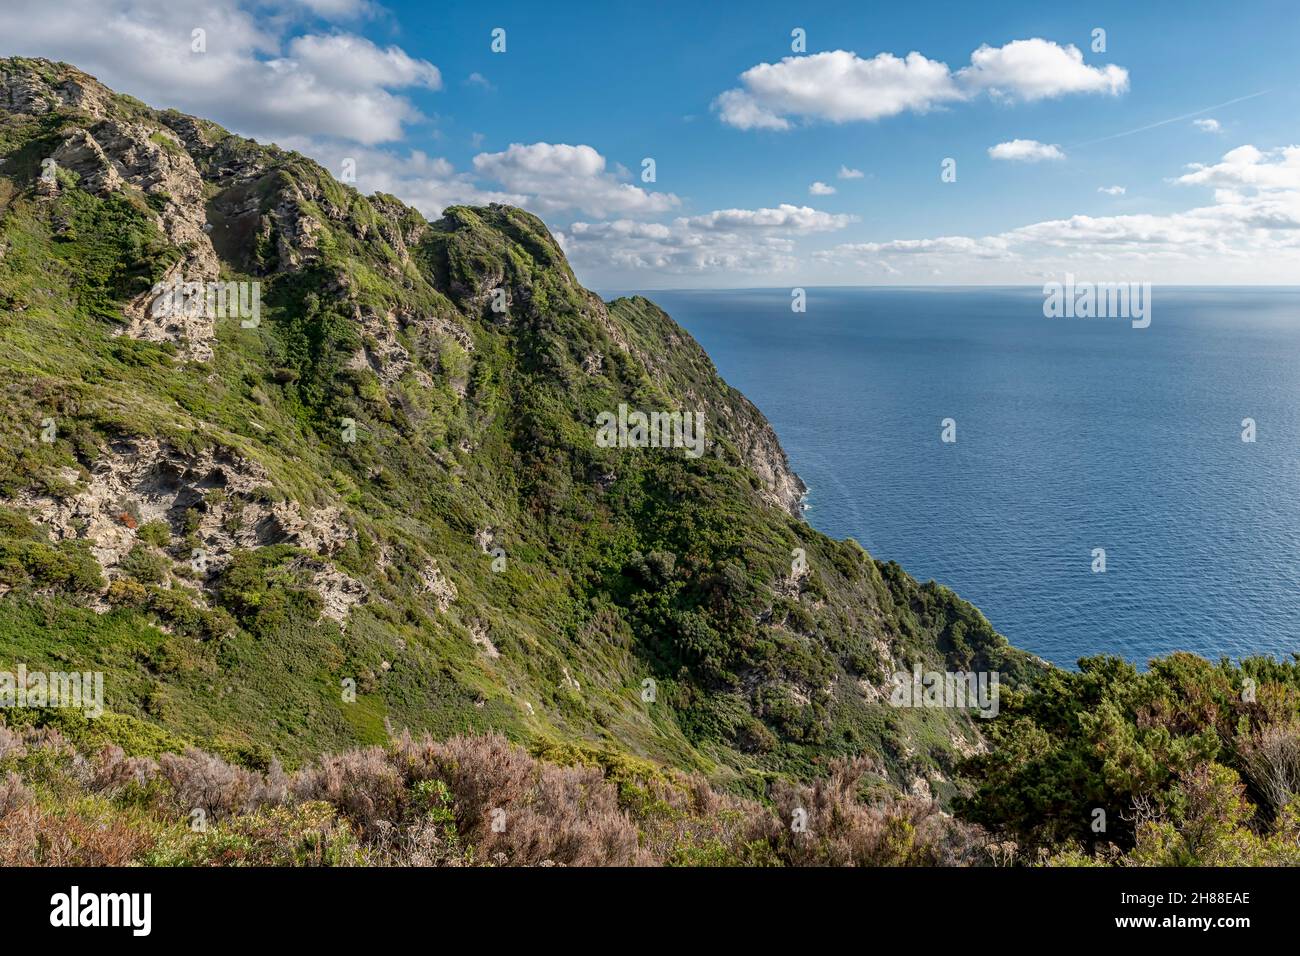 Vista aerea di uno scorcio dell'isola di Gorgona, Italia, in una giornata di sole Foto Stock